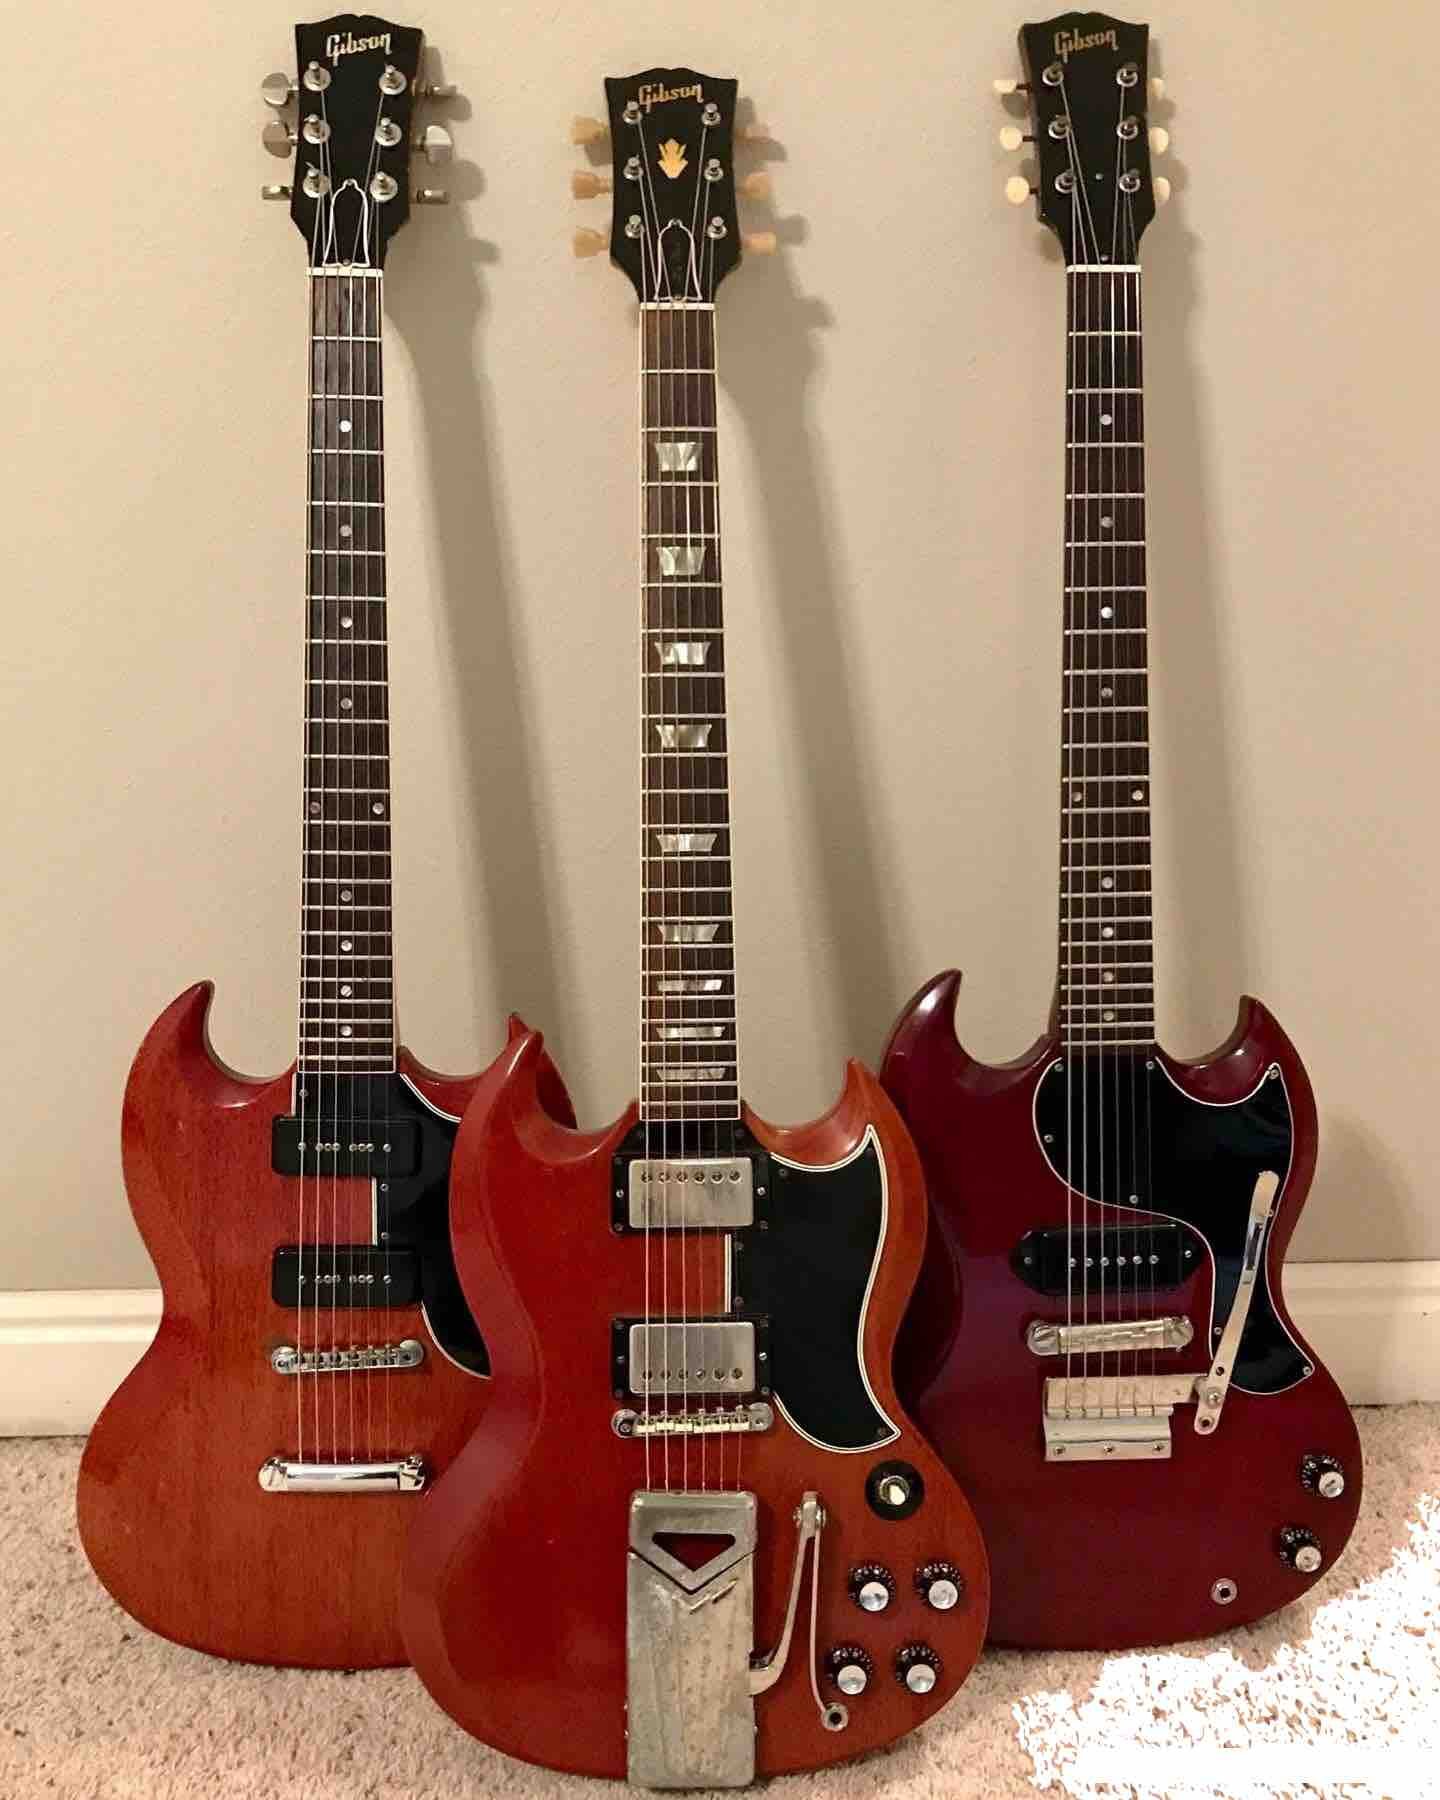 Vintage Guitars